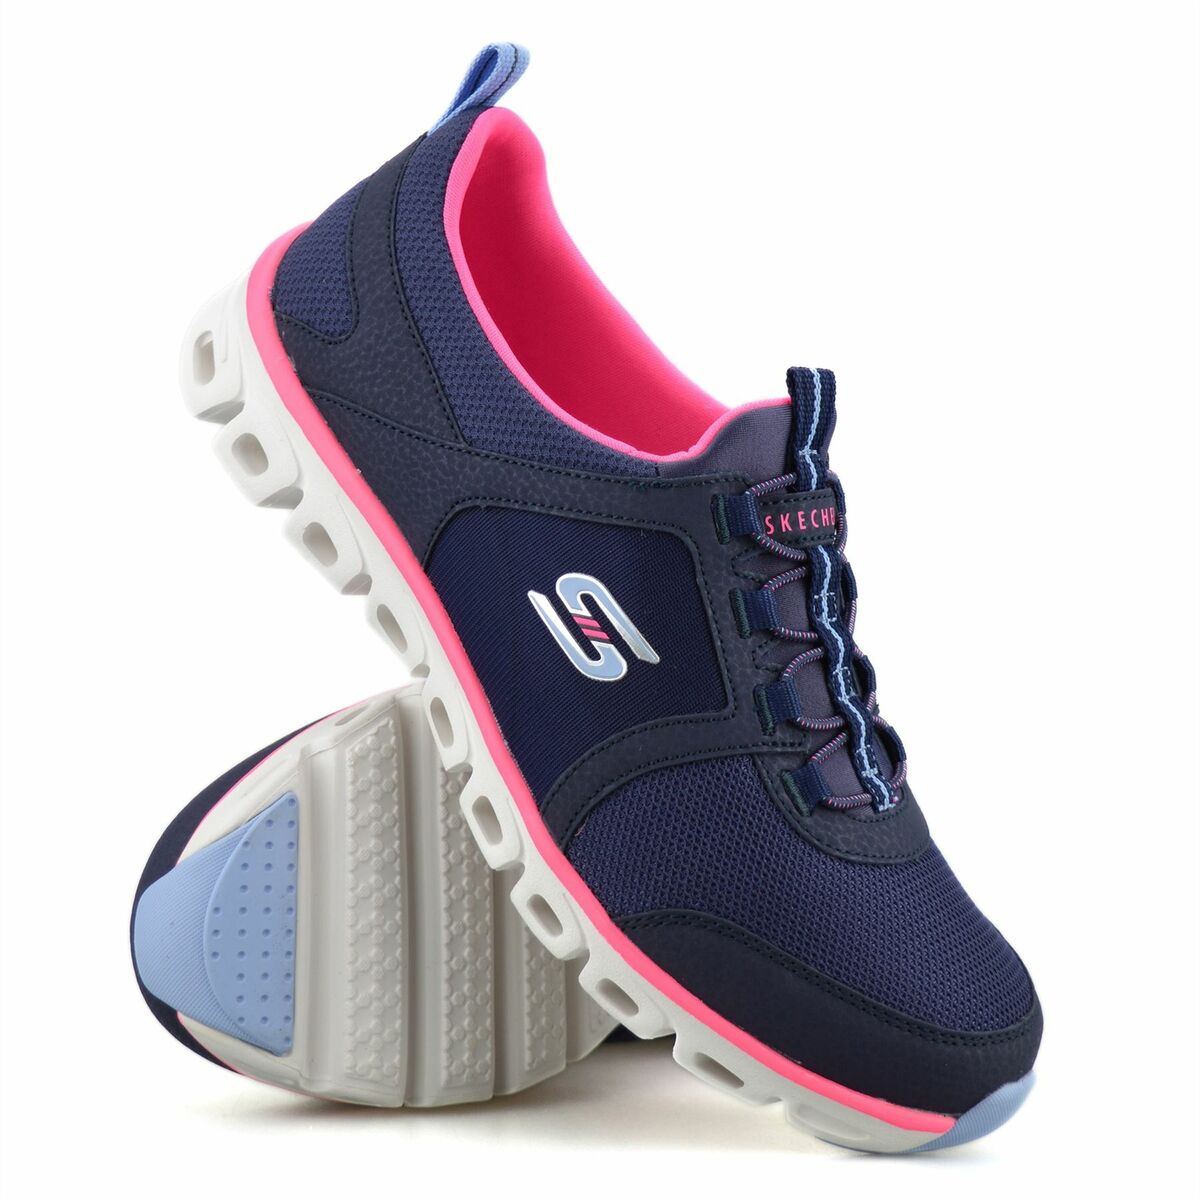 Womens Skechers Slip On Walking Sports Trainers Shoes | eBay